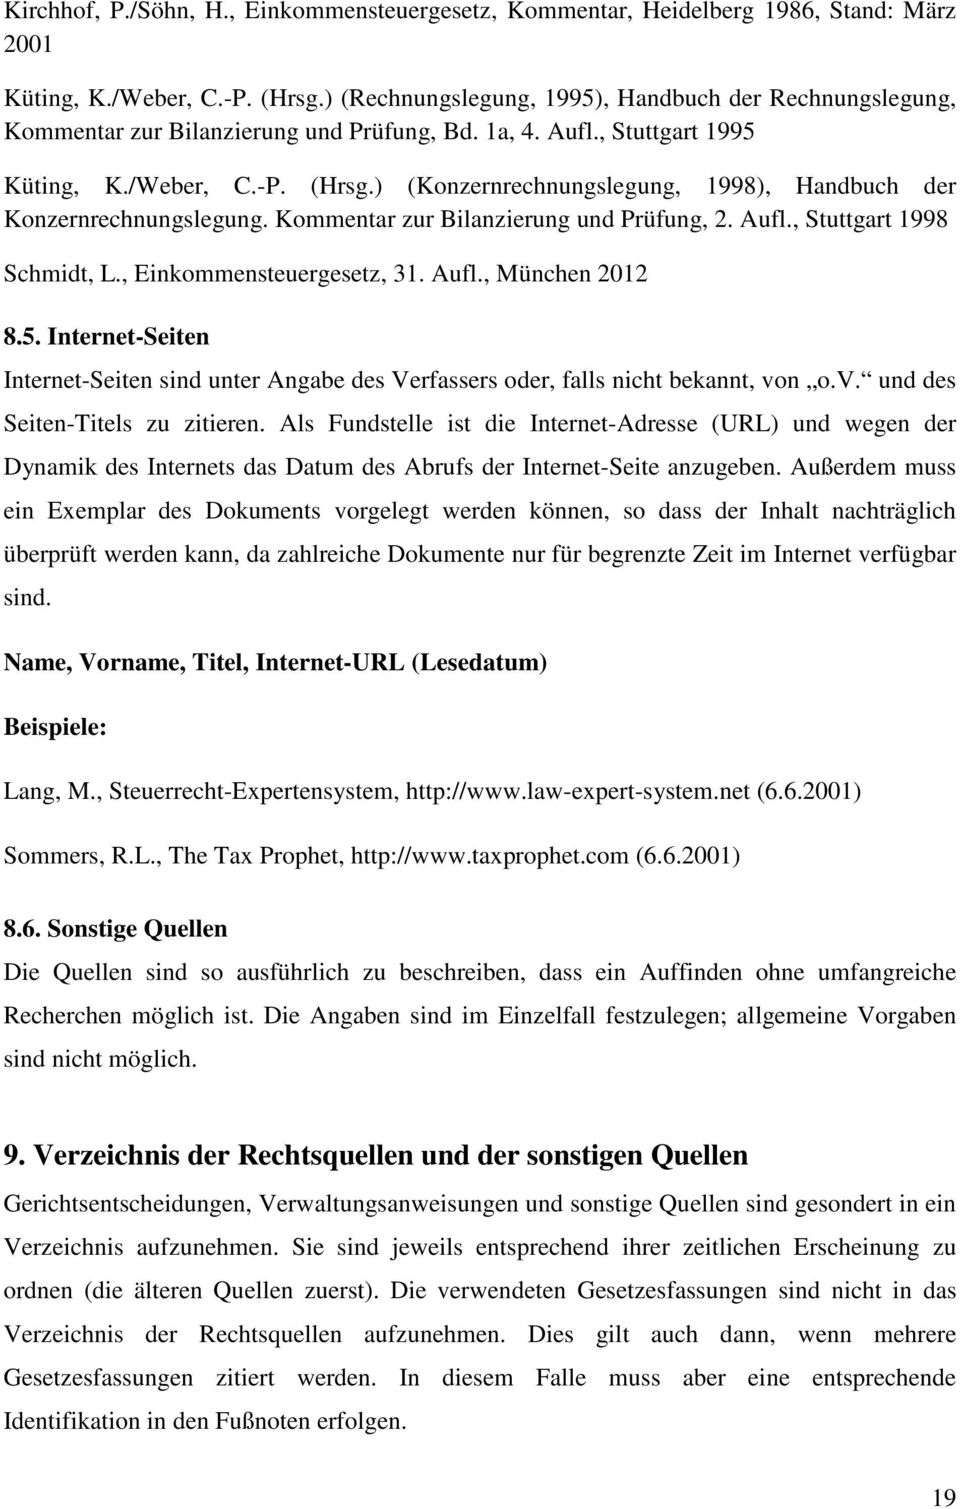 ) (Konzernrechnungslegung, 1998), Handbuch der Konzernrechnungslegung. Kommentar zur Bilanzierung und Prüfung, 2. Aufl., Stuttgart 1998 Schmidt, L., Einkommensteuergesetz, 31. Aufl., München 2012 8.5.